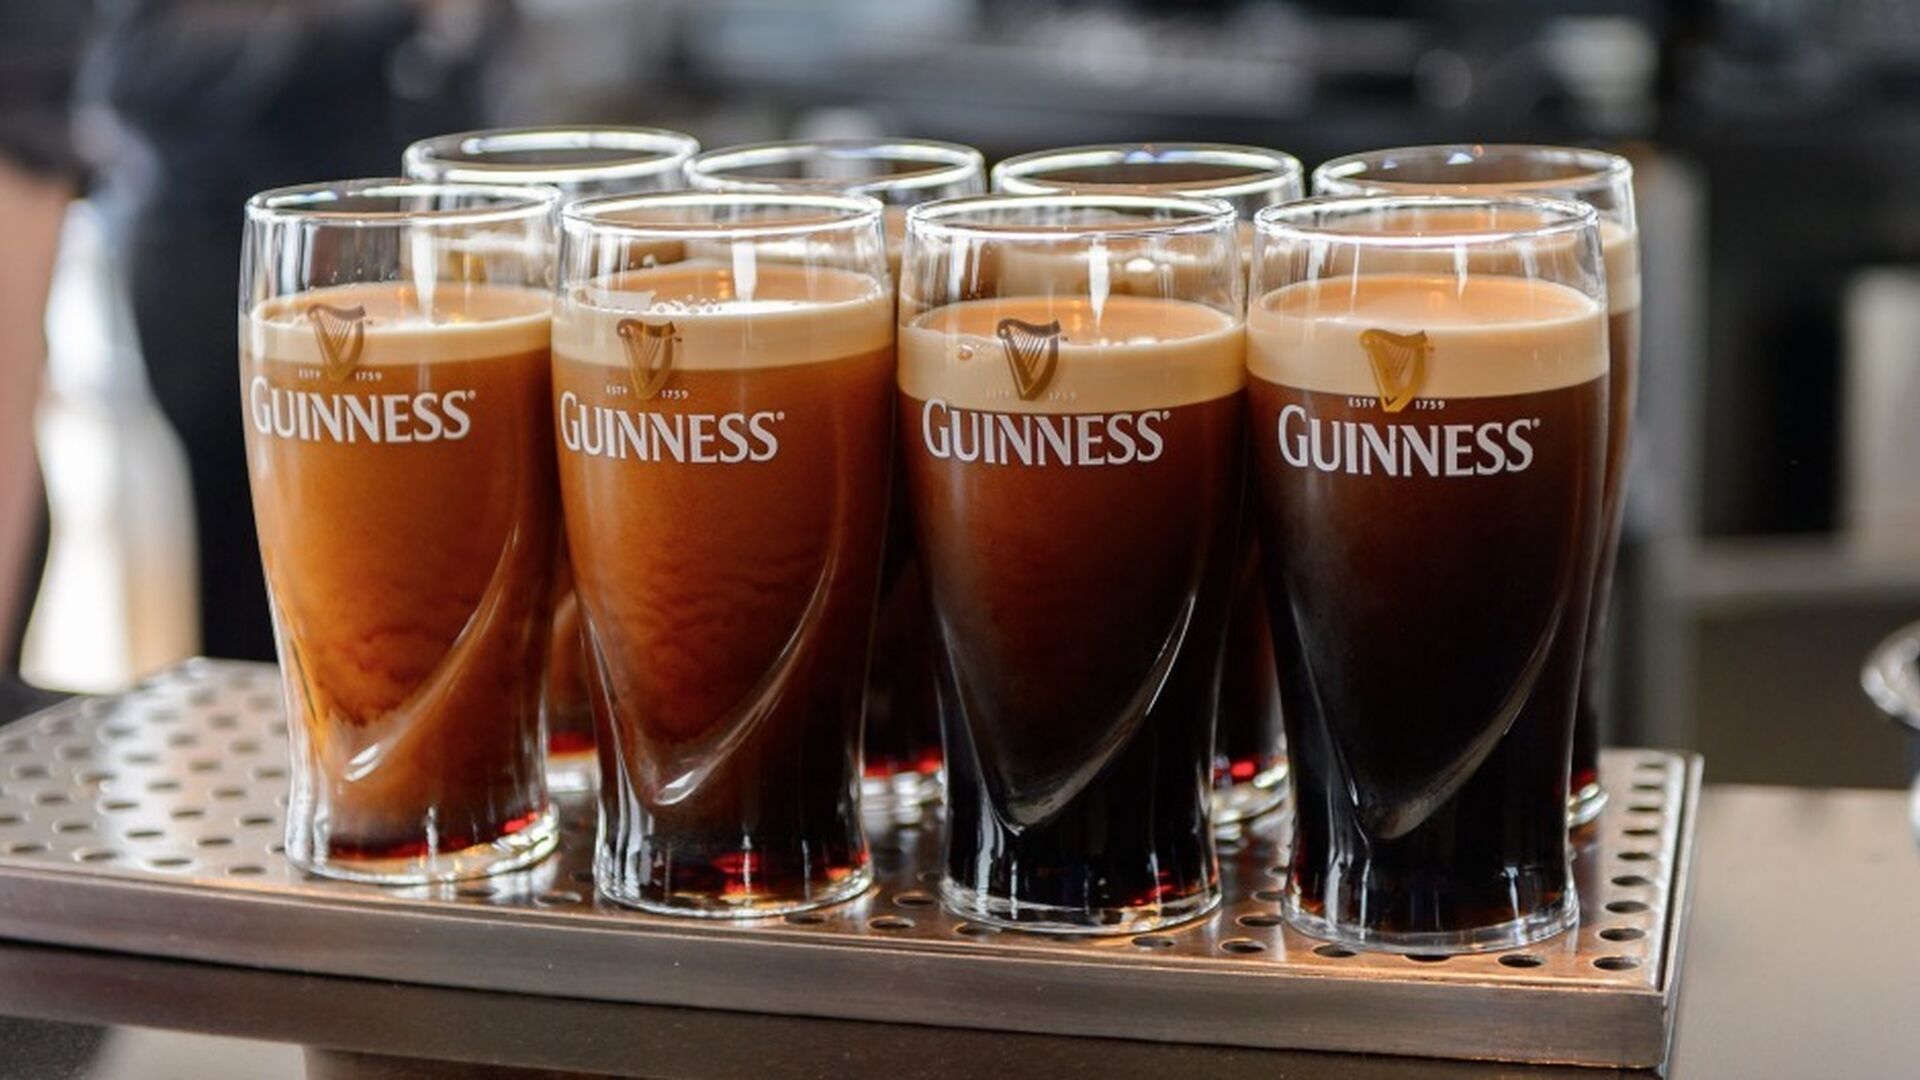 Guinness.&nbsp;Sin duda, la cerveza irlandesa m&aacute;s famosa. La Original est&aacute; basada en una elaboraci&oacute;n de 1821, cuando Arthur Guinness II estableci&oacute; instrucciones precisas para la elaboraci&oacute;n de la Superior Porter. Esta cerveza ha sido la precursora del resto de innovaciones de Guinness que haya probado (5% de alcohol).